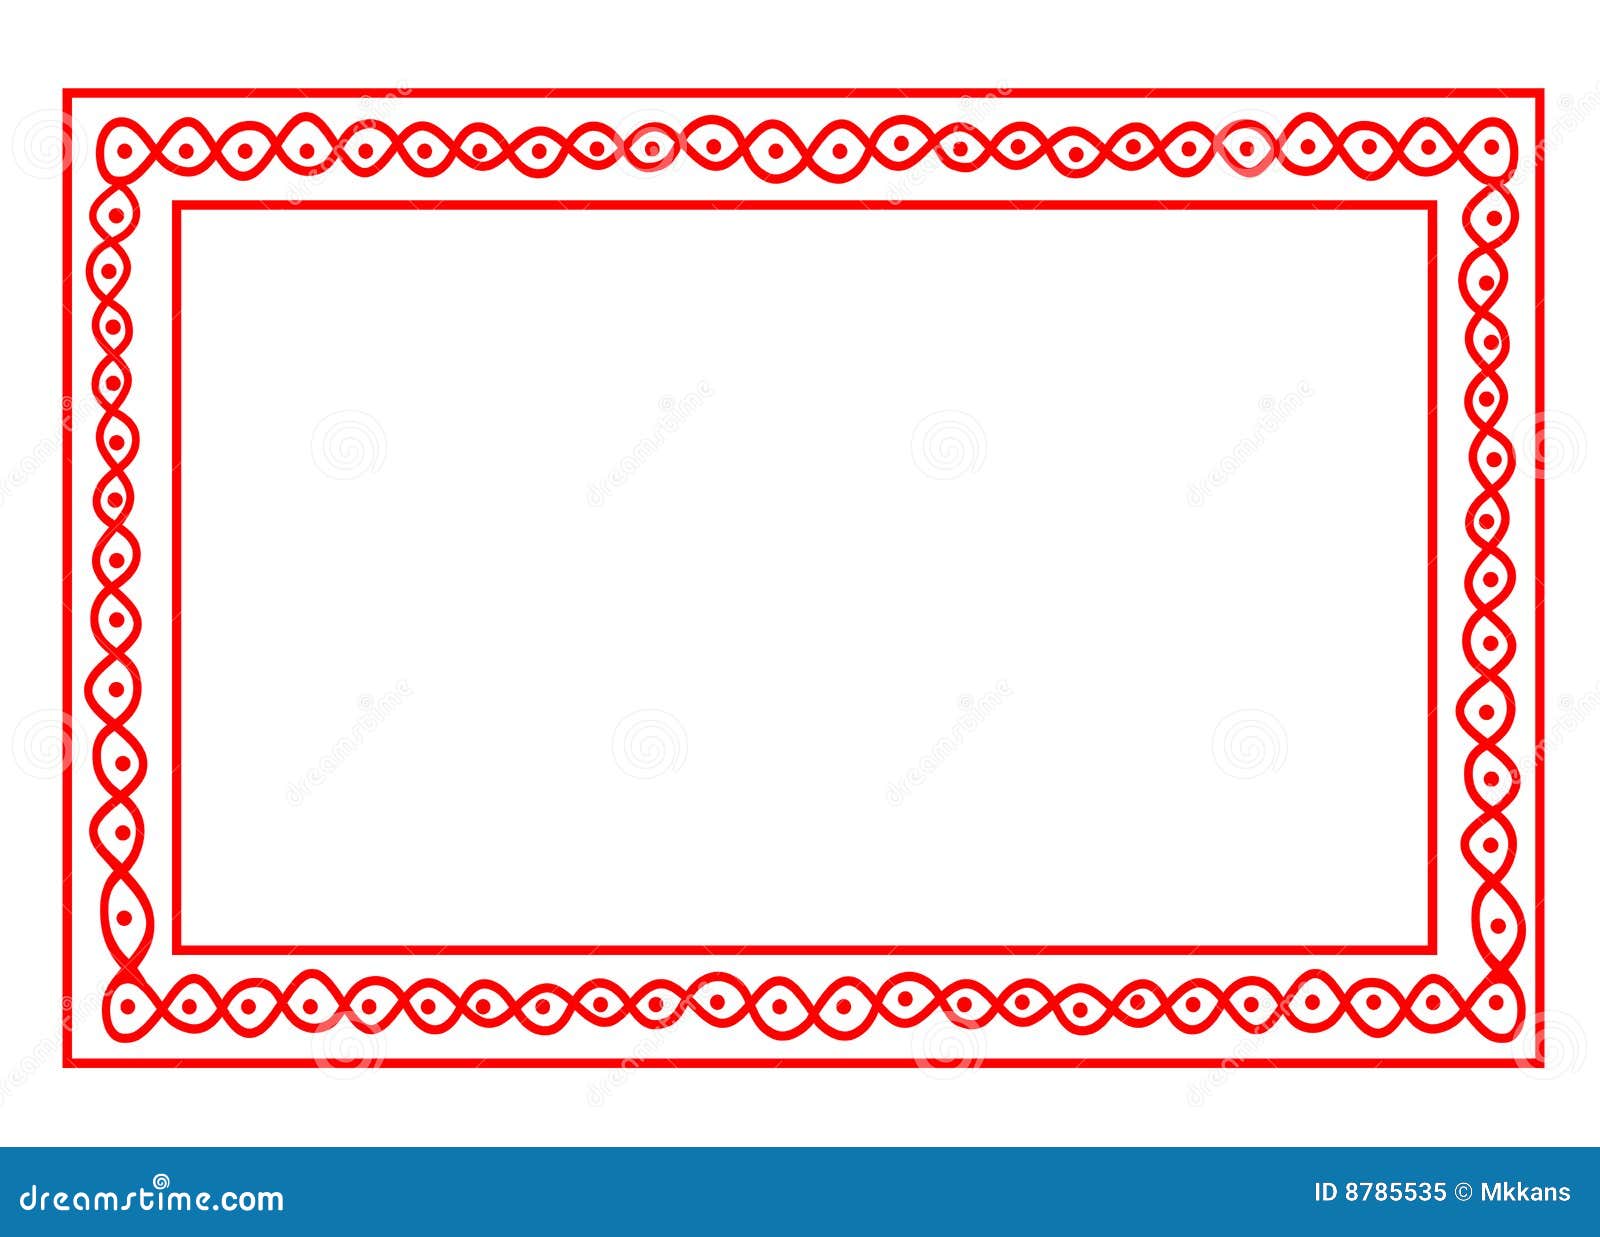 Indian design border frame stock illustration. Illustration of flames -  8785535